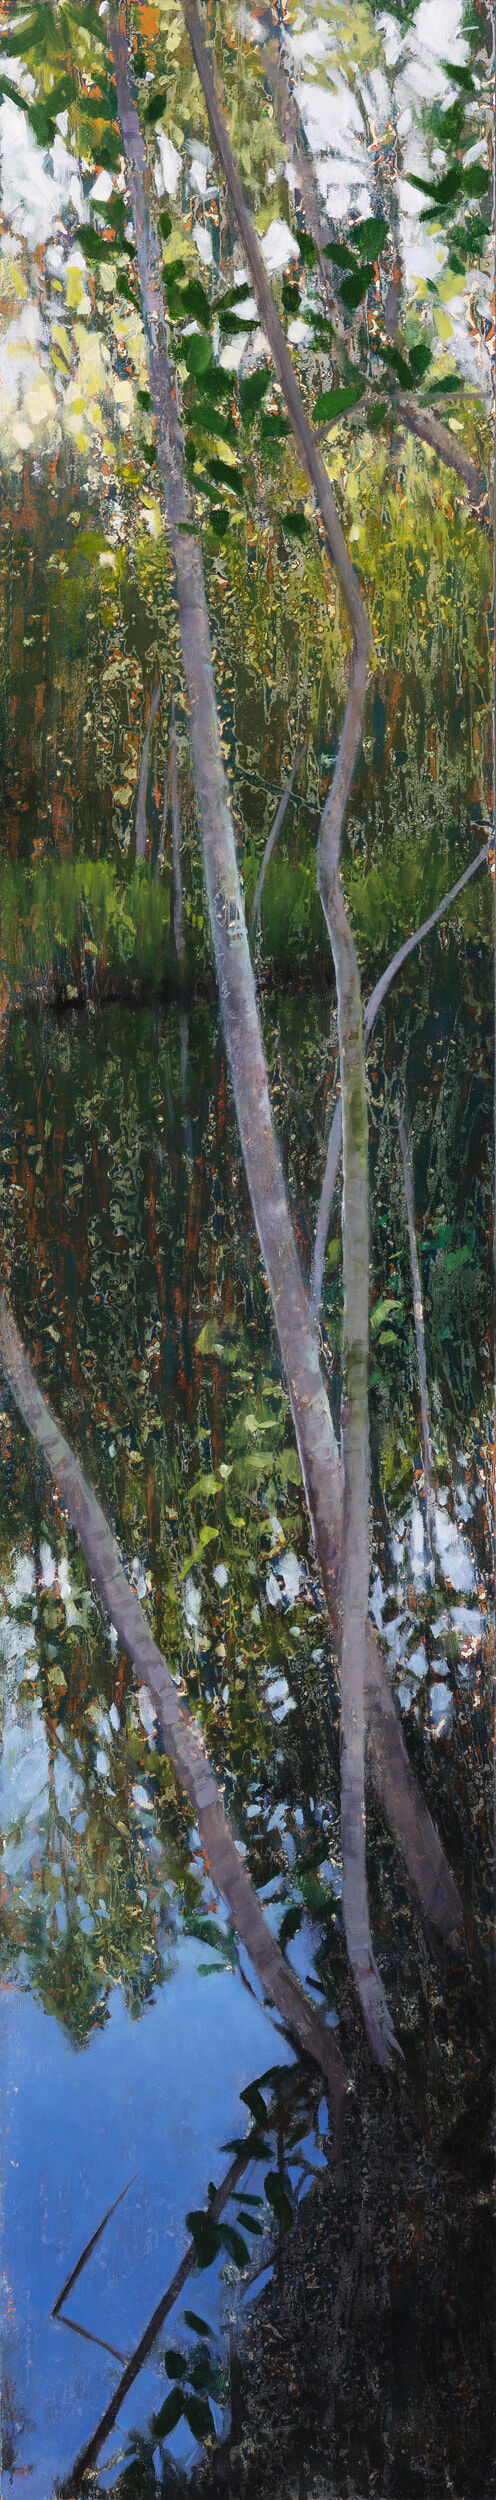 AJ Taylor, Reflected Landscape, Murdering Creek, 2020, oil on board, 70 x 14 cm